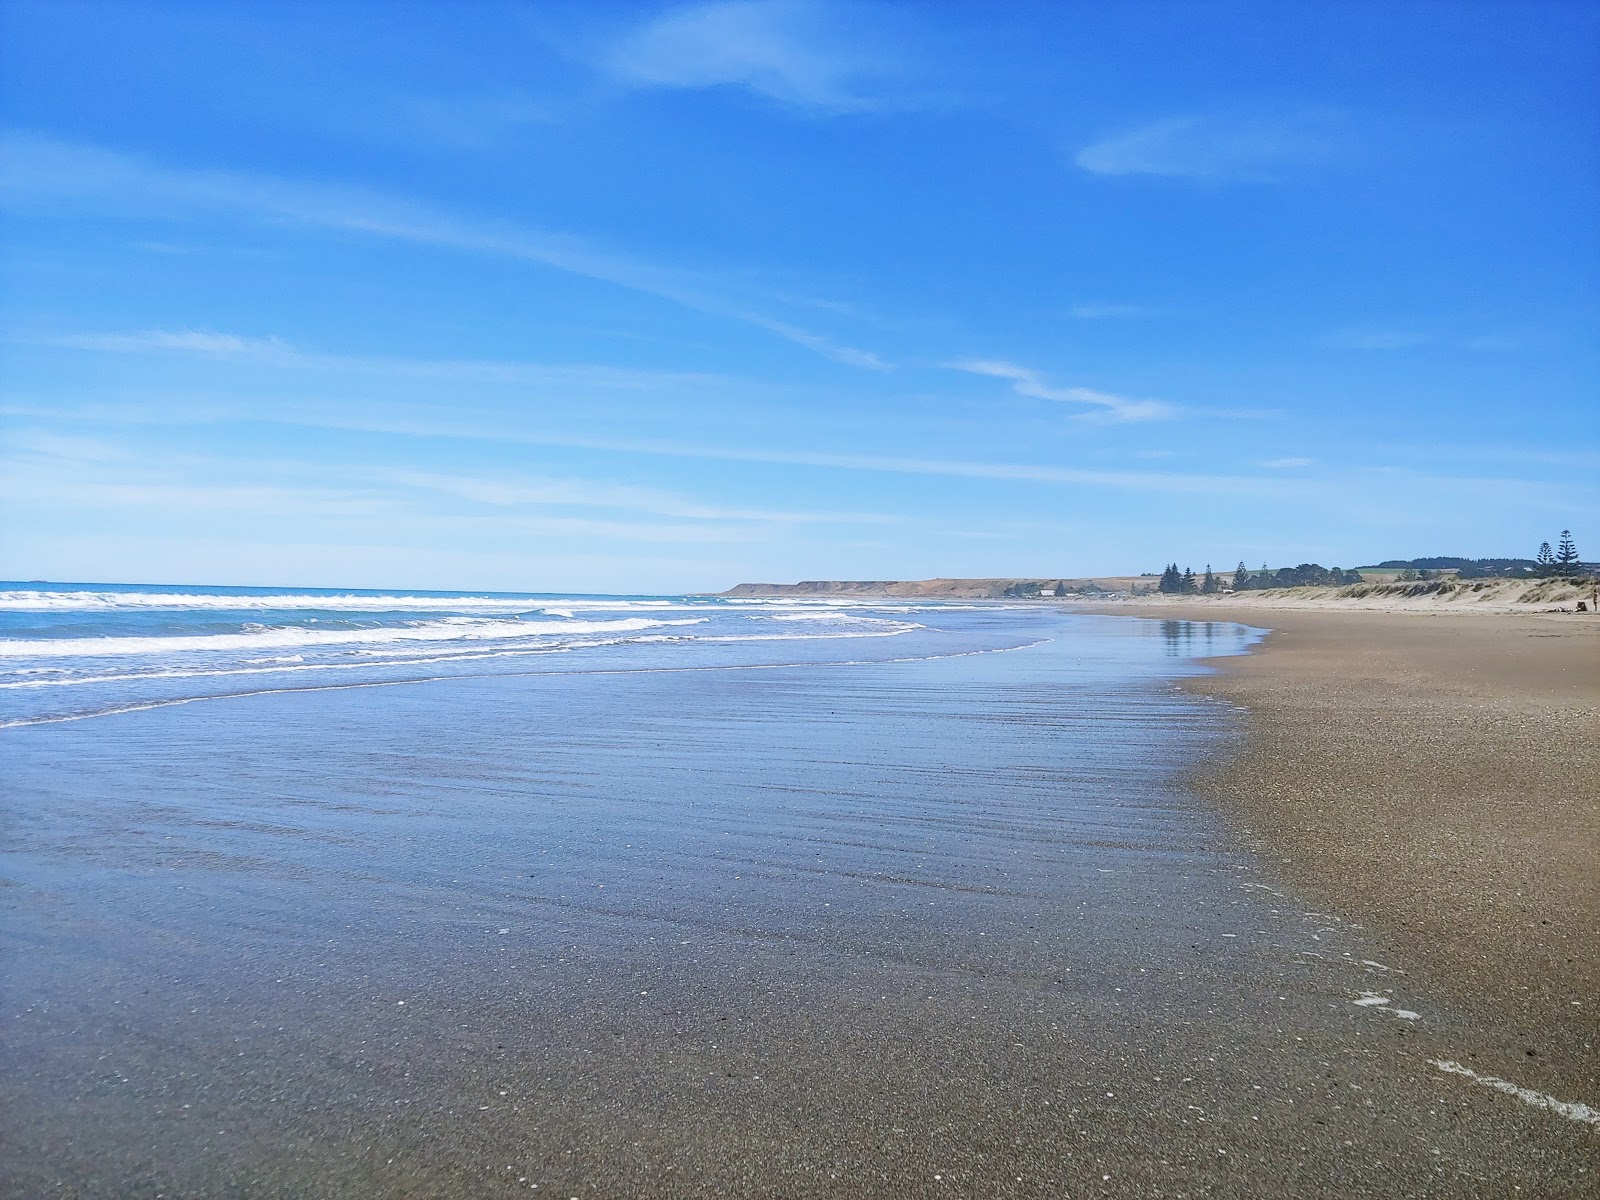 Zdjęcie Riversdale Beach z powierzchnią jasny piasek